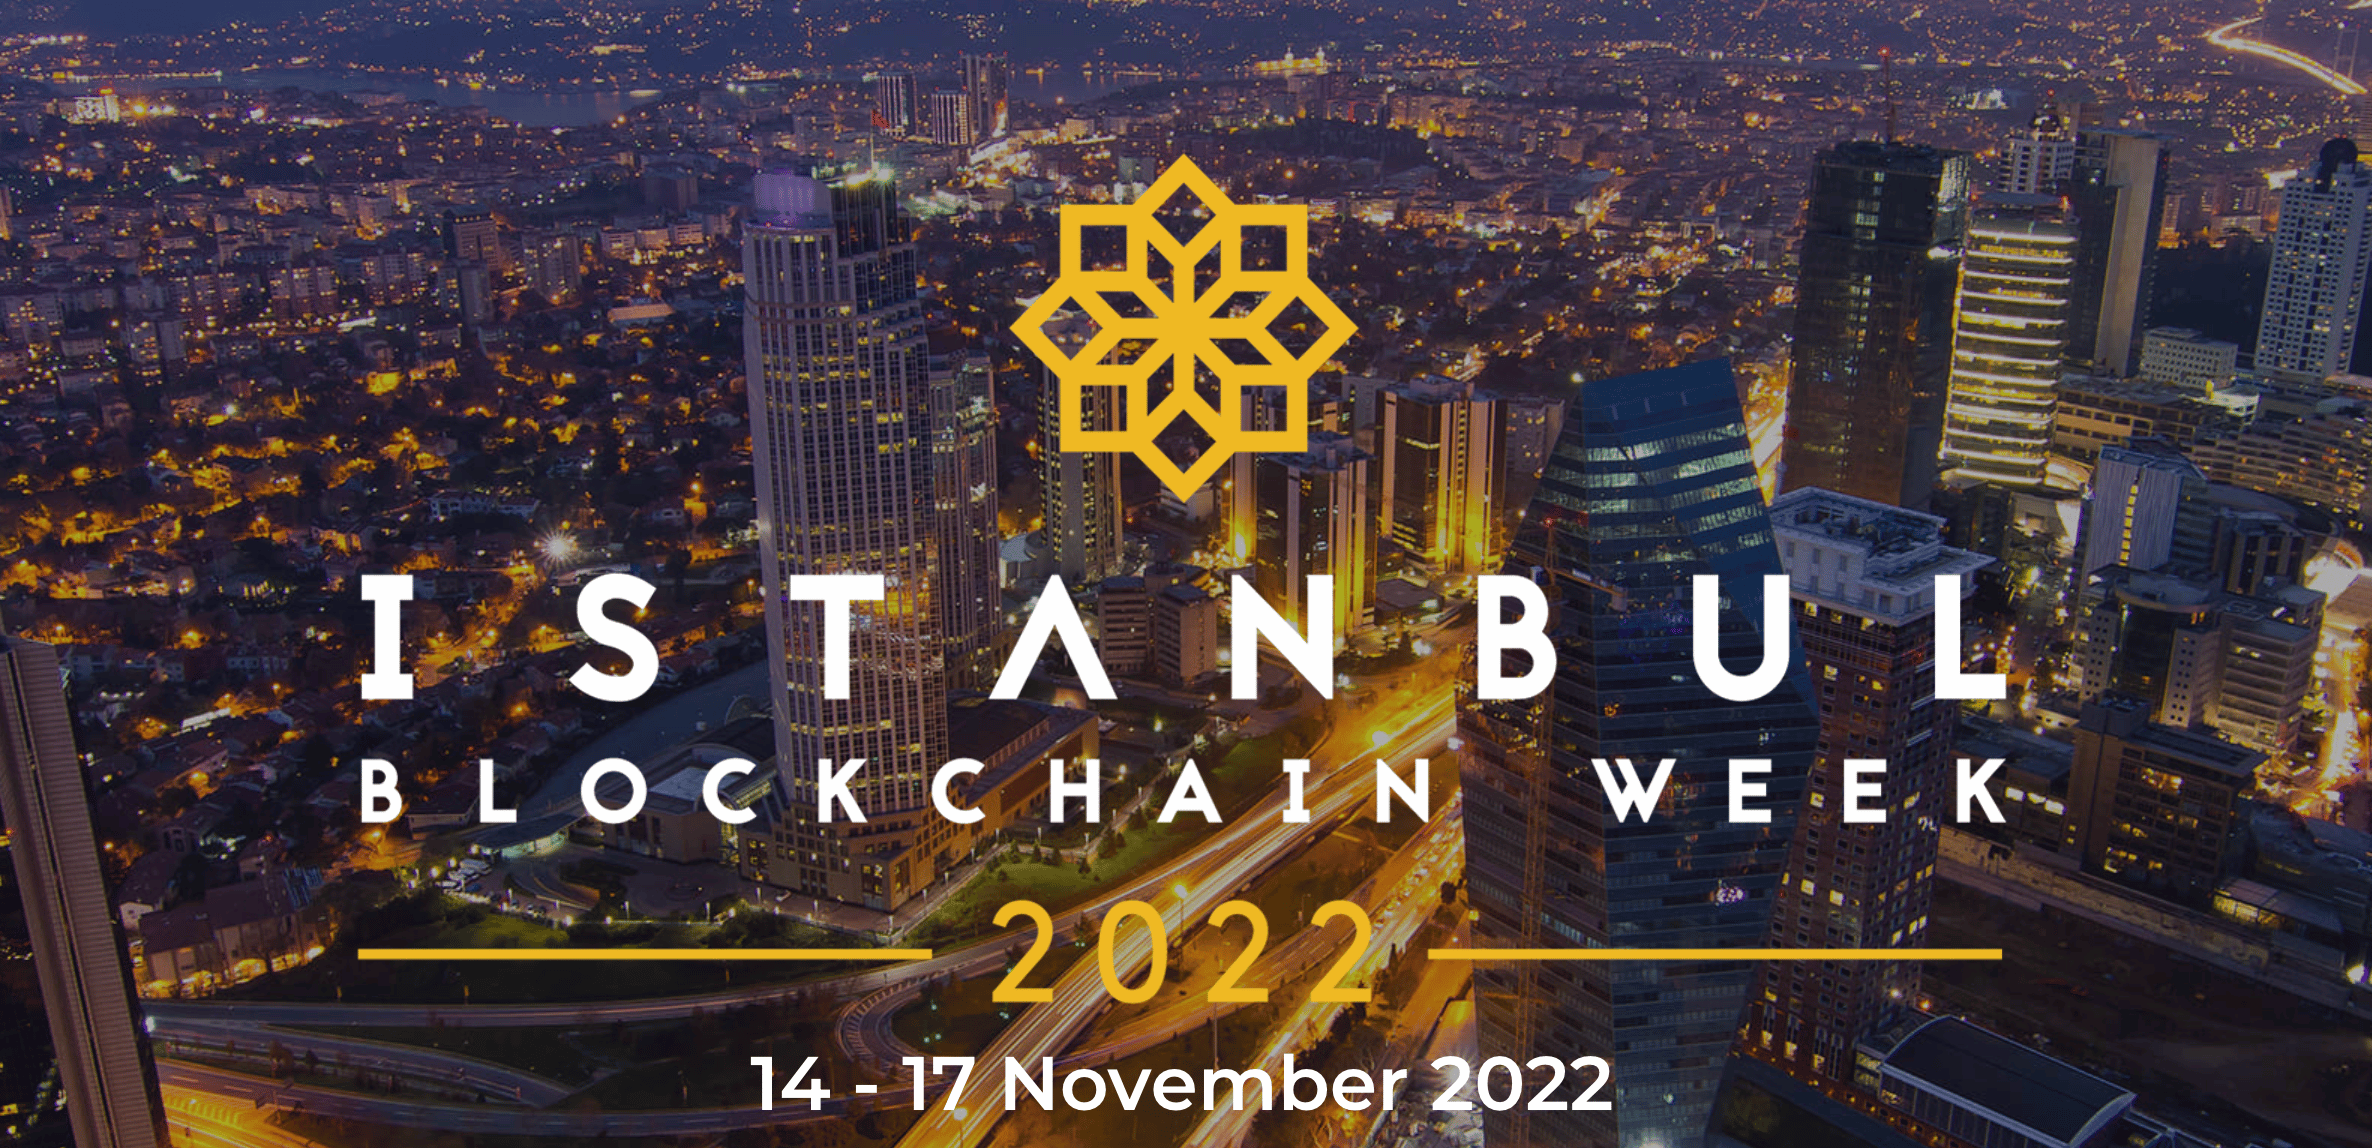 Imagen del logo y texto de la Semana Blockchain de Estambul